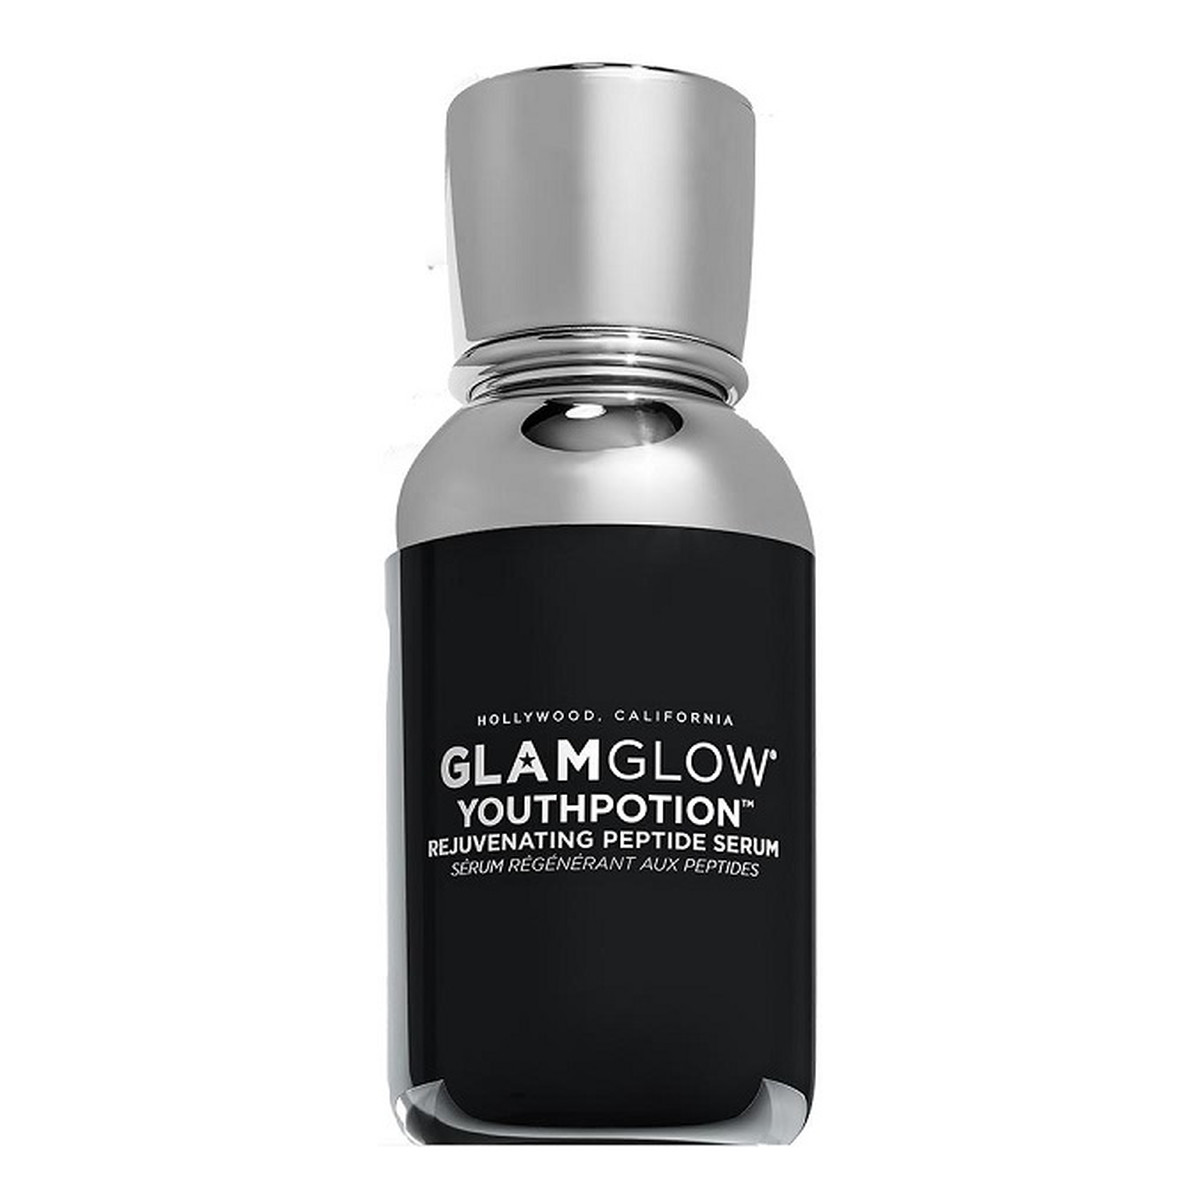 GlamGlow Youthpotion rejuvenating peptide serum odmładzające serum do twarzy 30ml